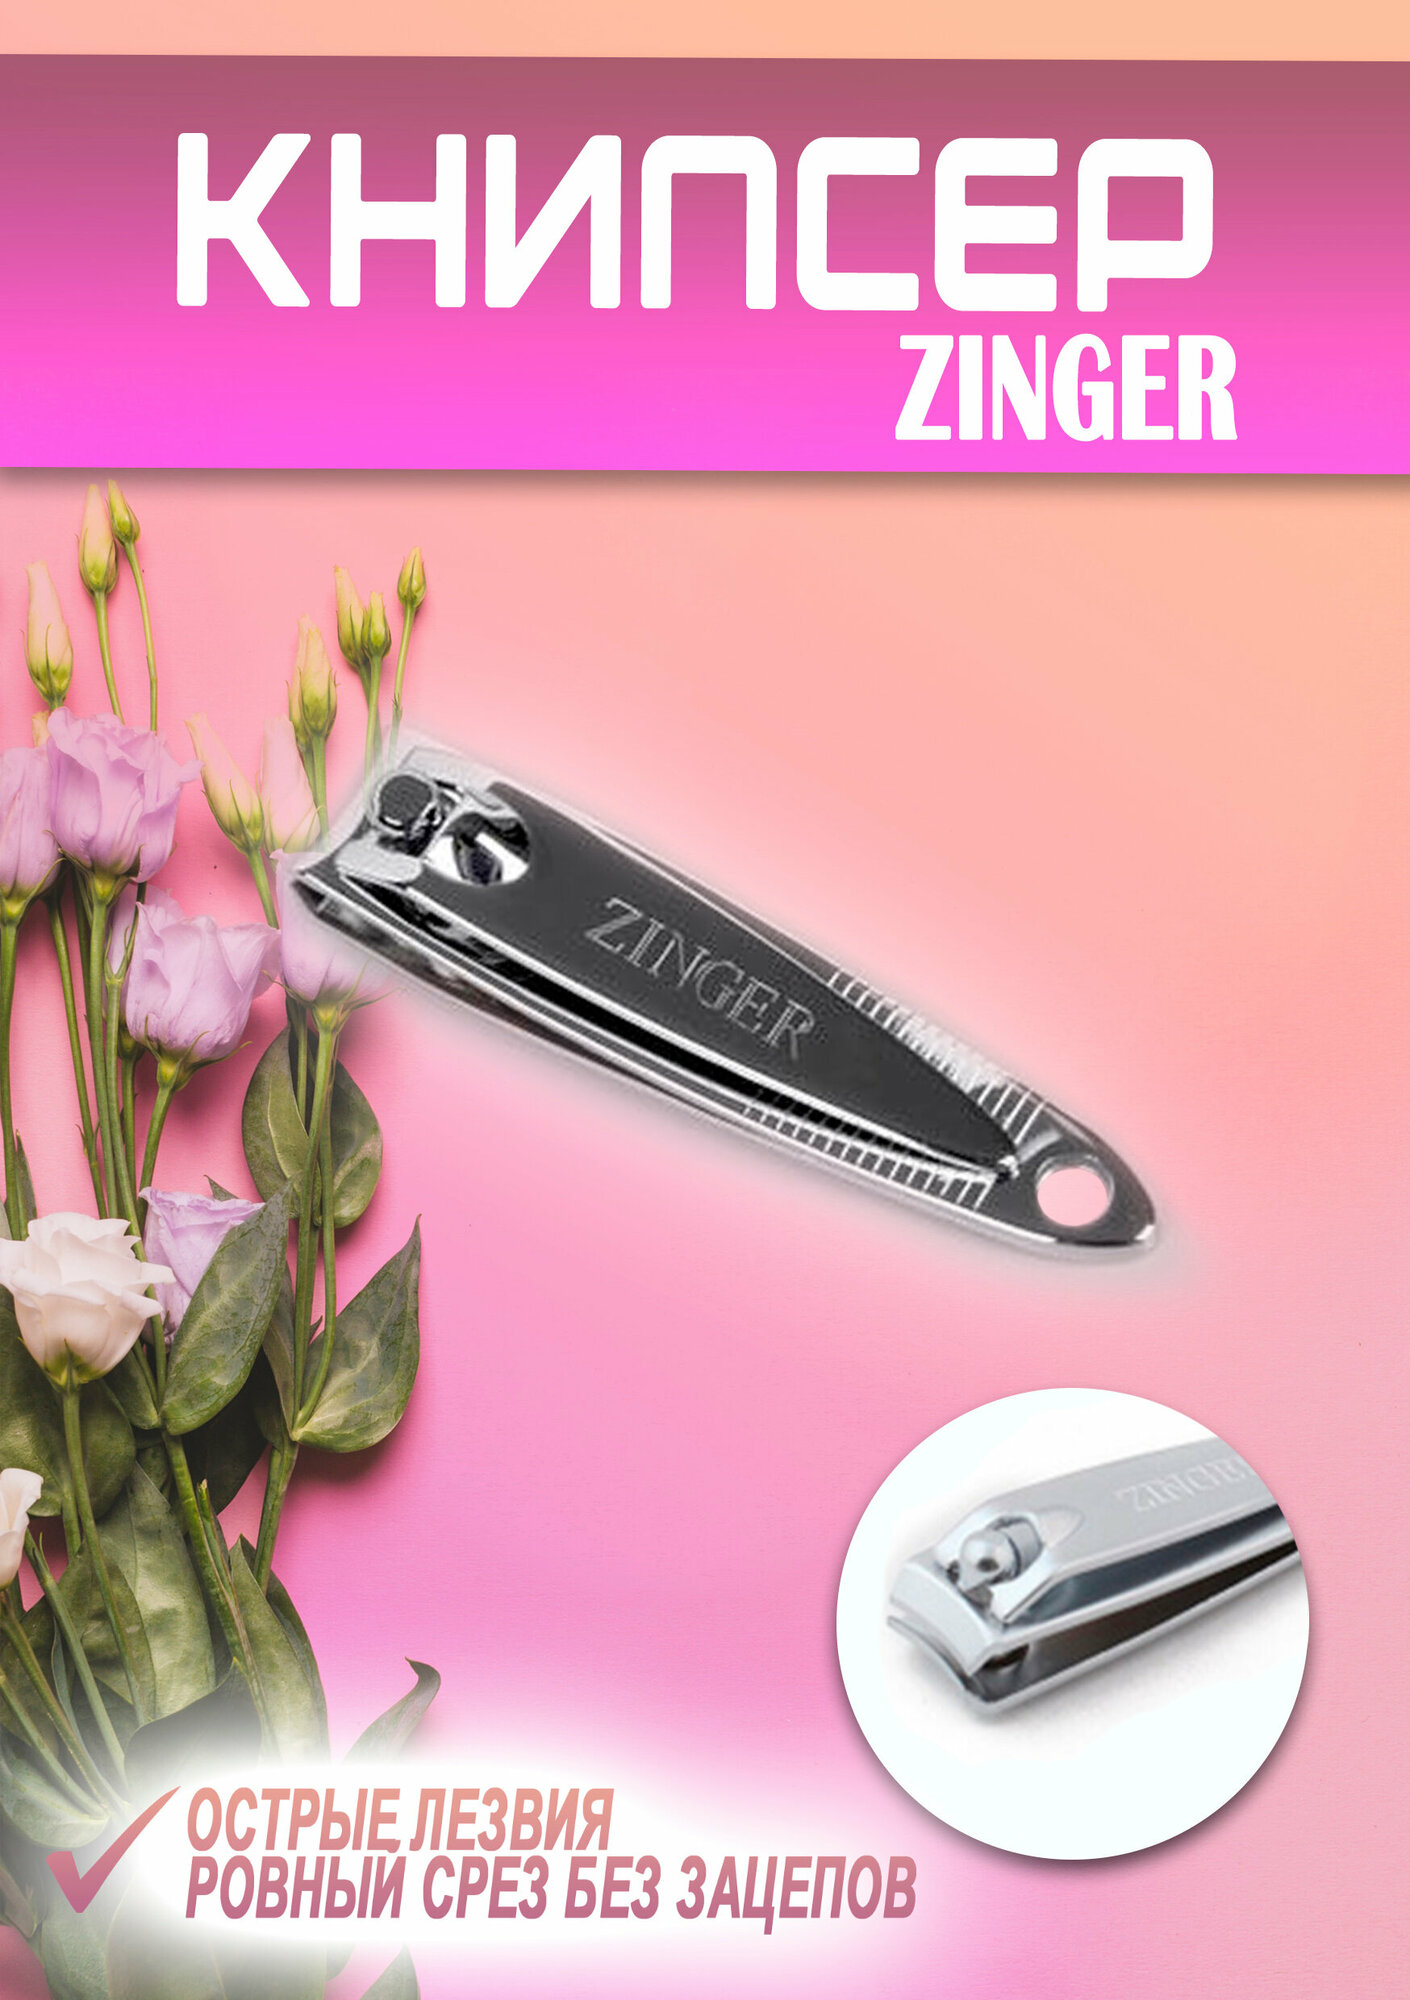 Книпсер Zinger (SLN-602-M) маленький, кусачки-книпсер для ногтей